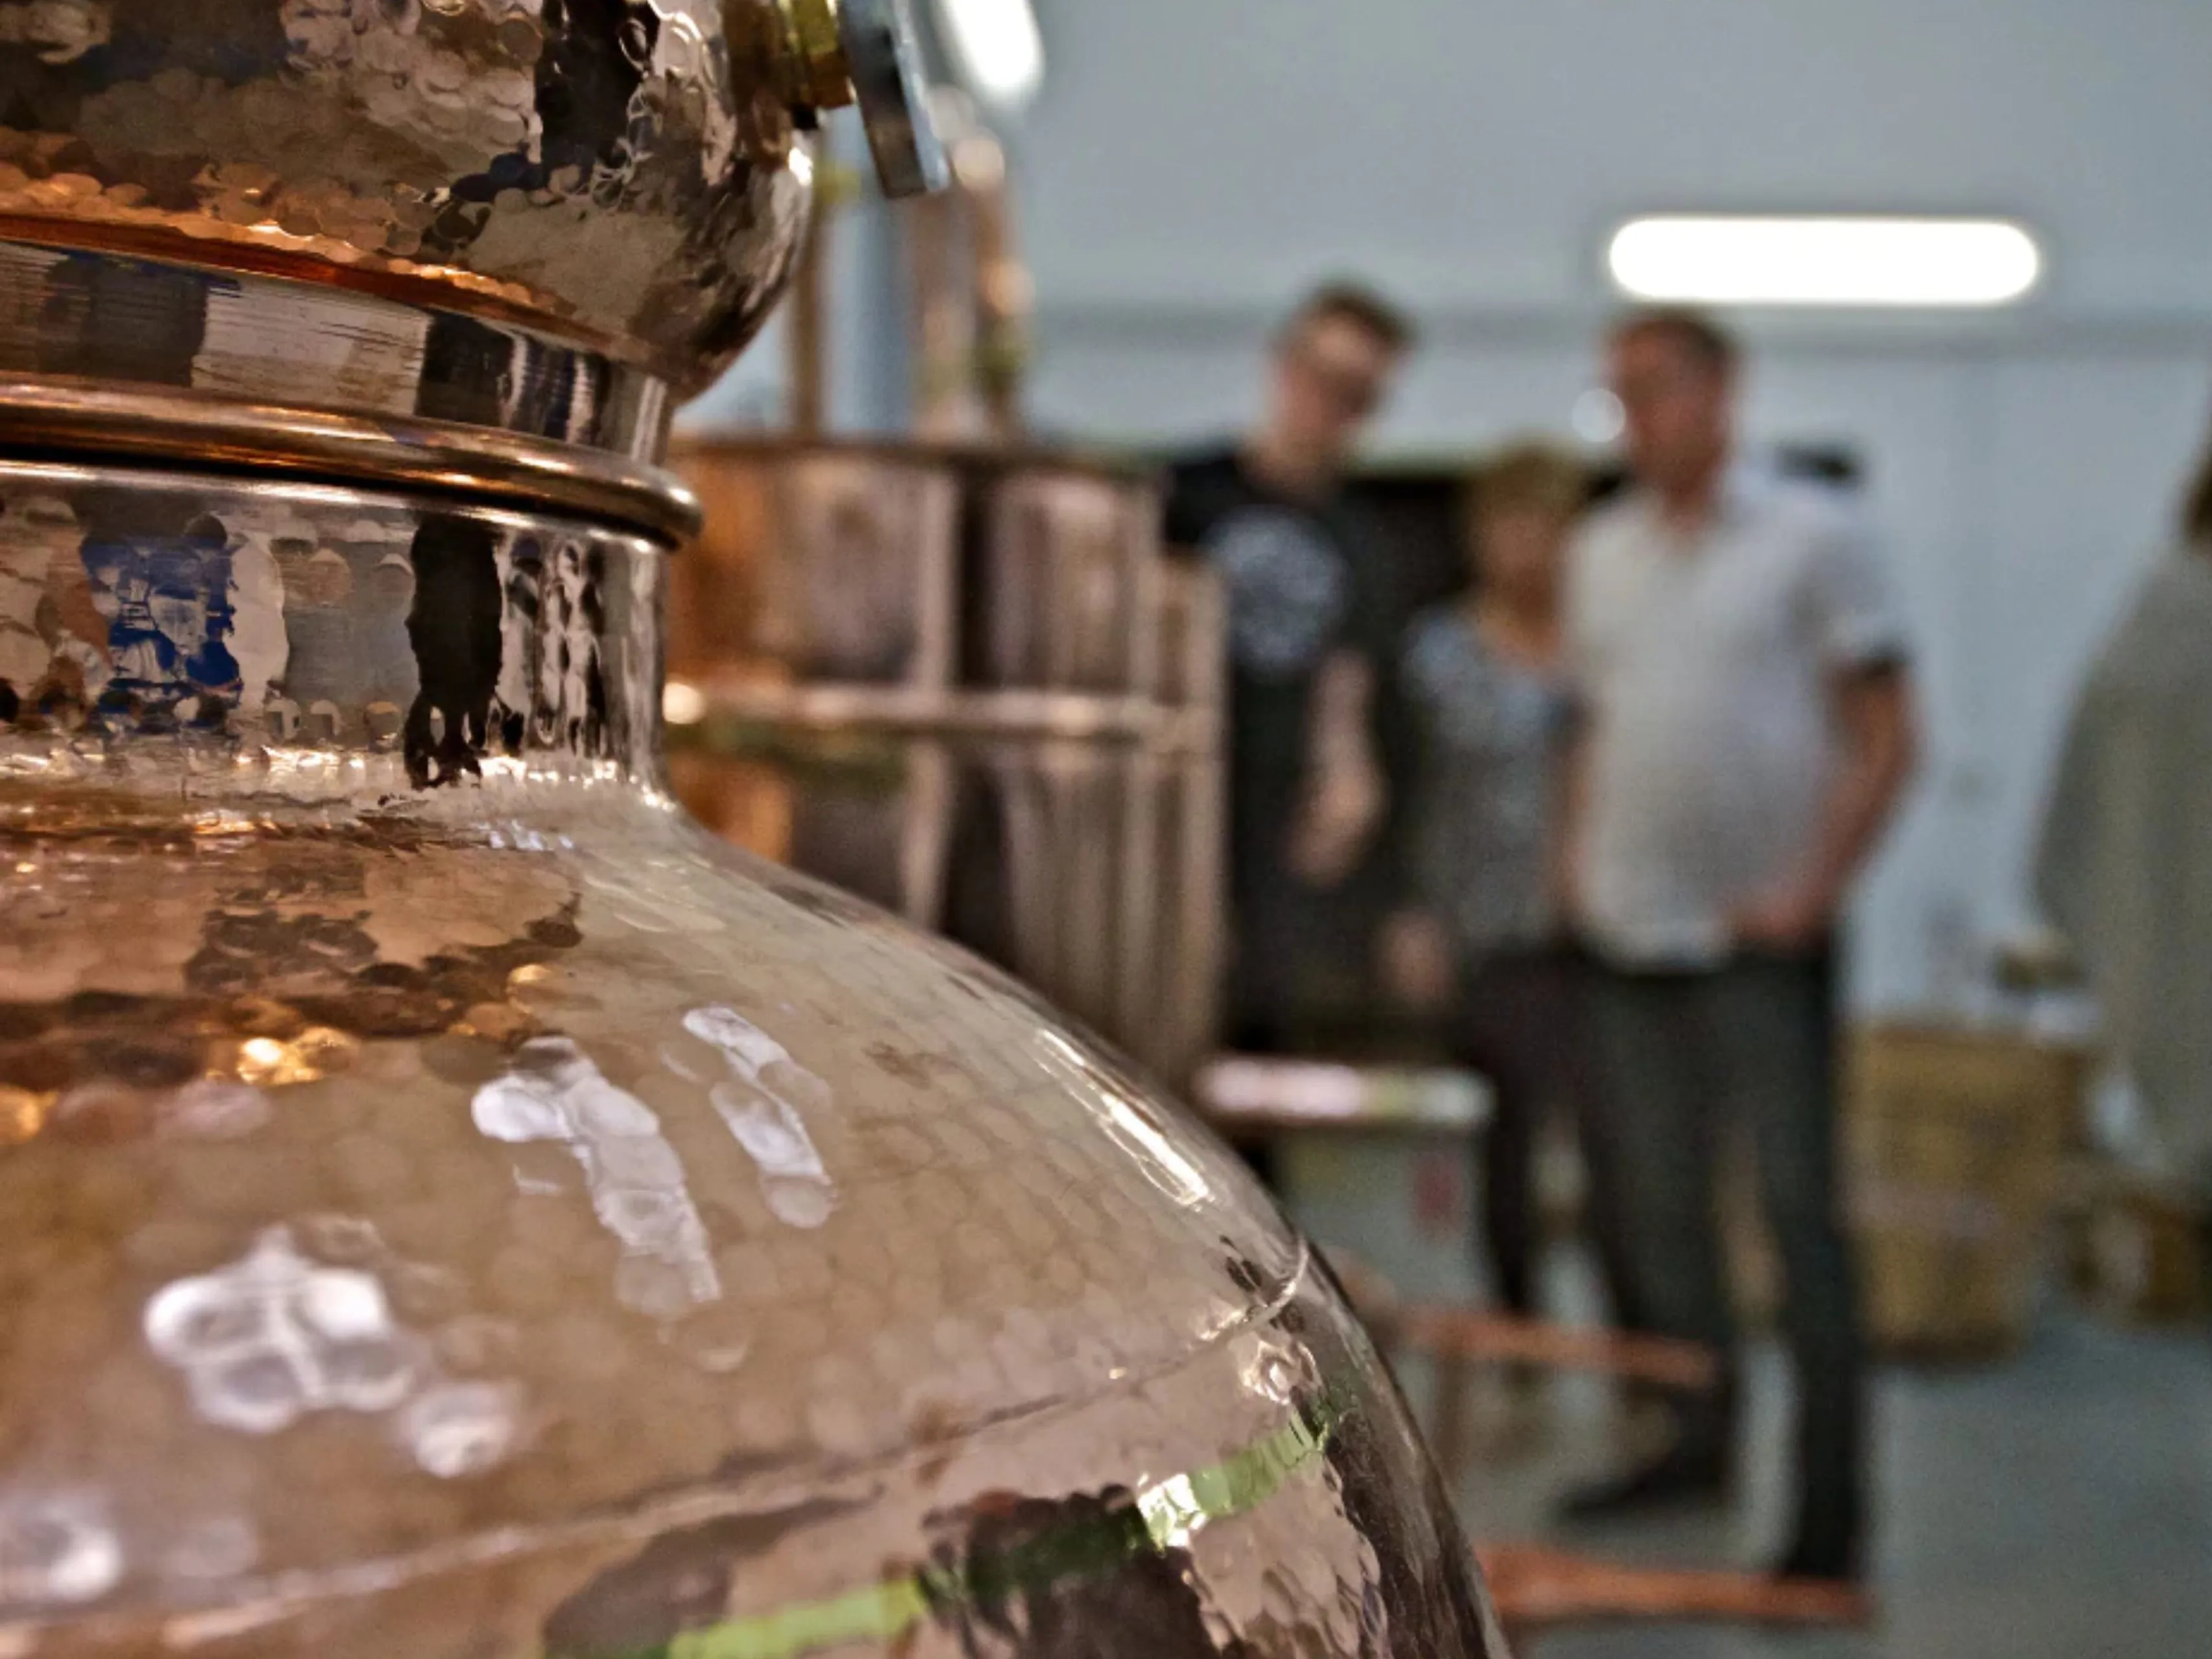 okrney distillery still